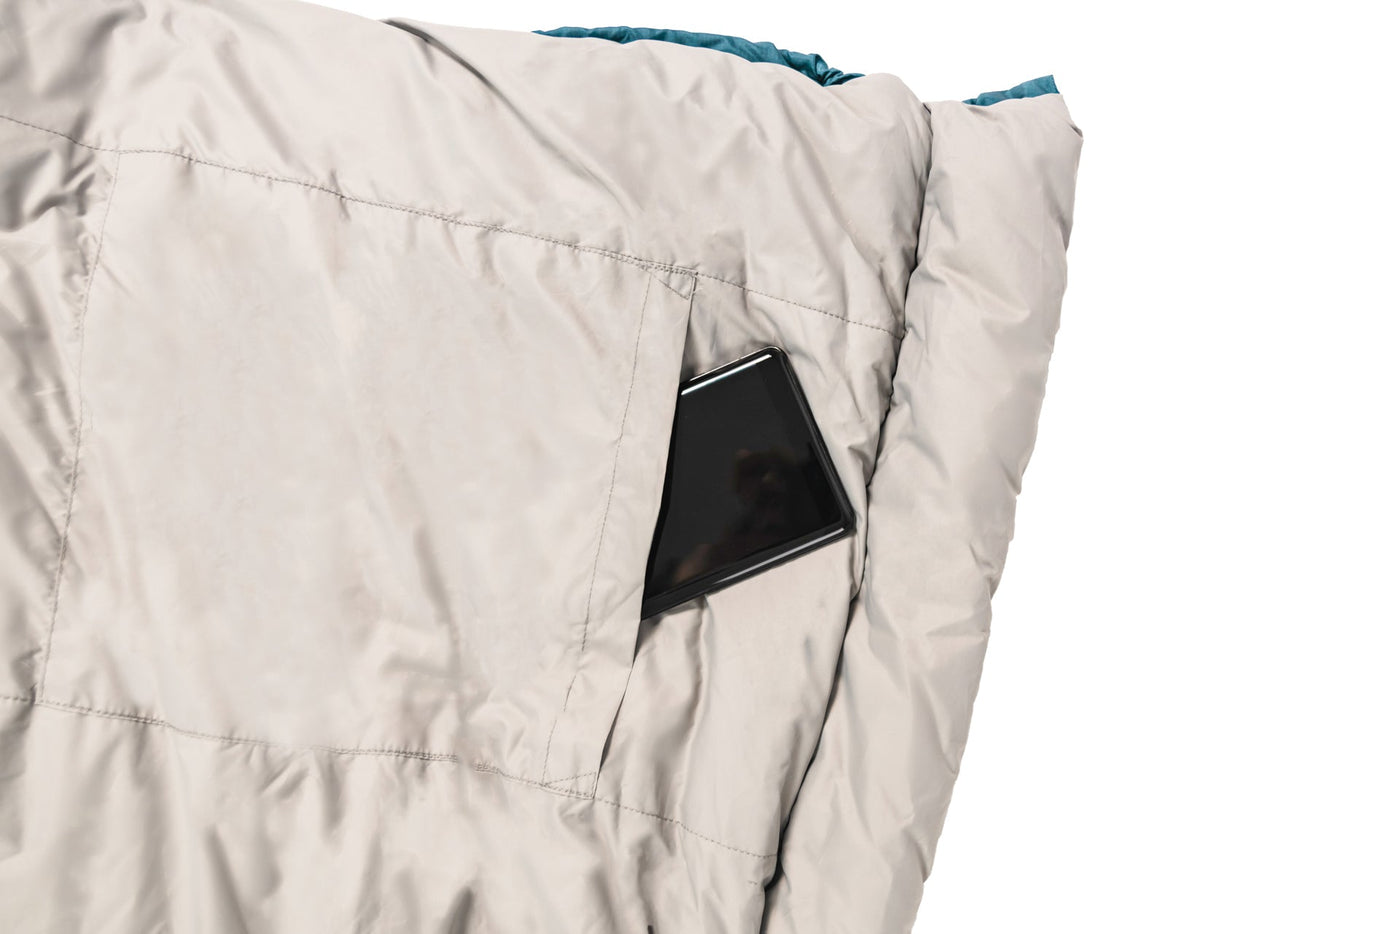 Grüezi bag Deckenschlafsack Biopod Wolle Goas Comfort - Innentasche